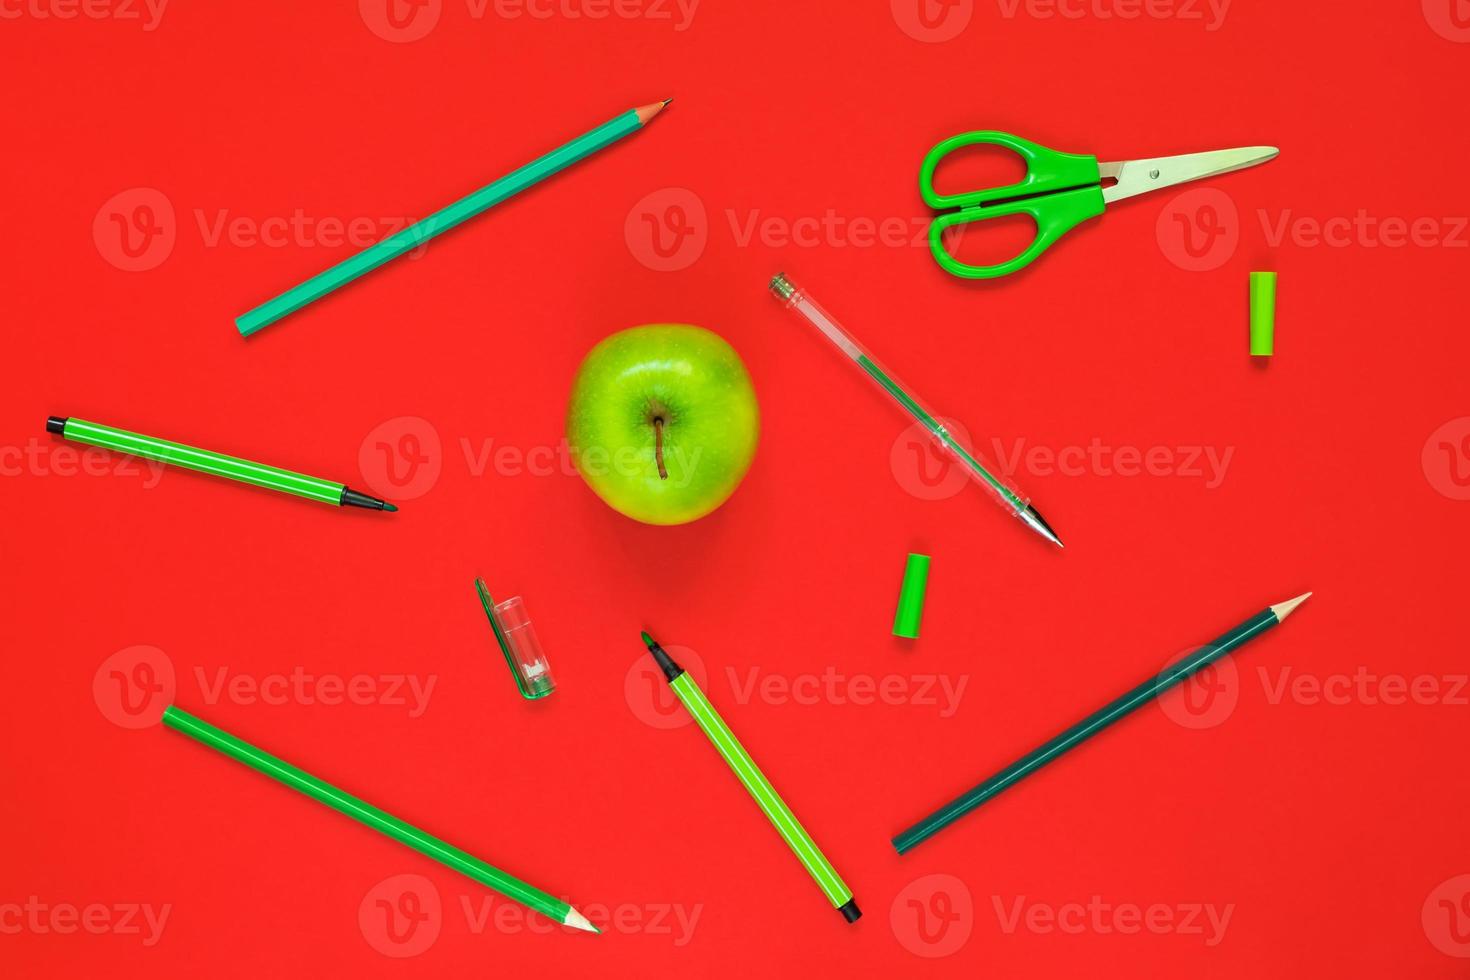 creatief plat leggen van schoolbenodigdheden - groene pennen, potloden, schaar en een appel op een rode achtergrond foto